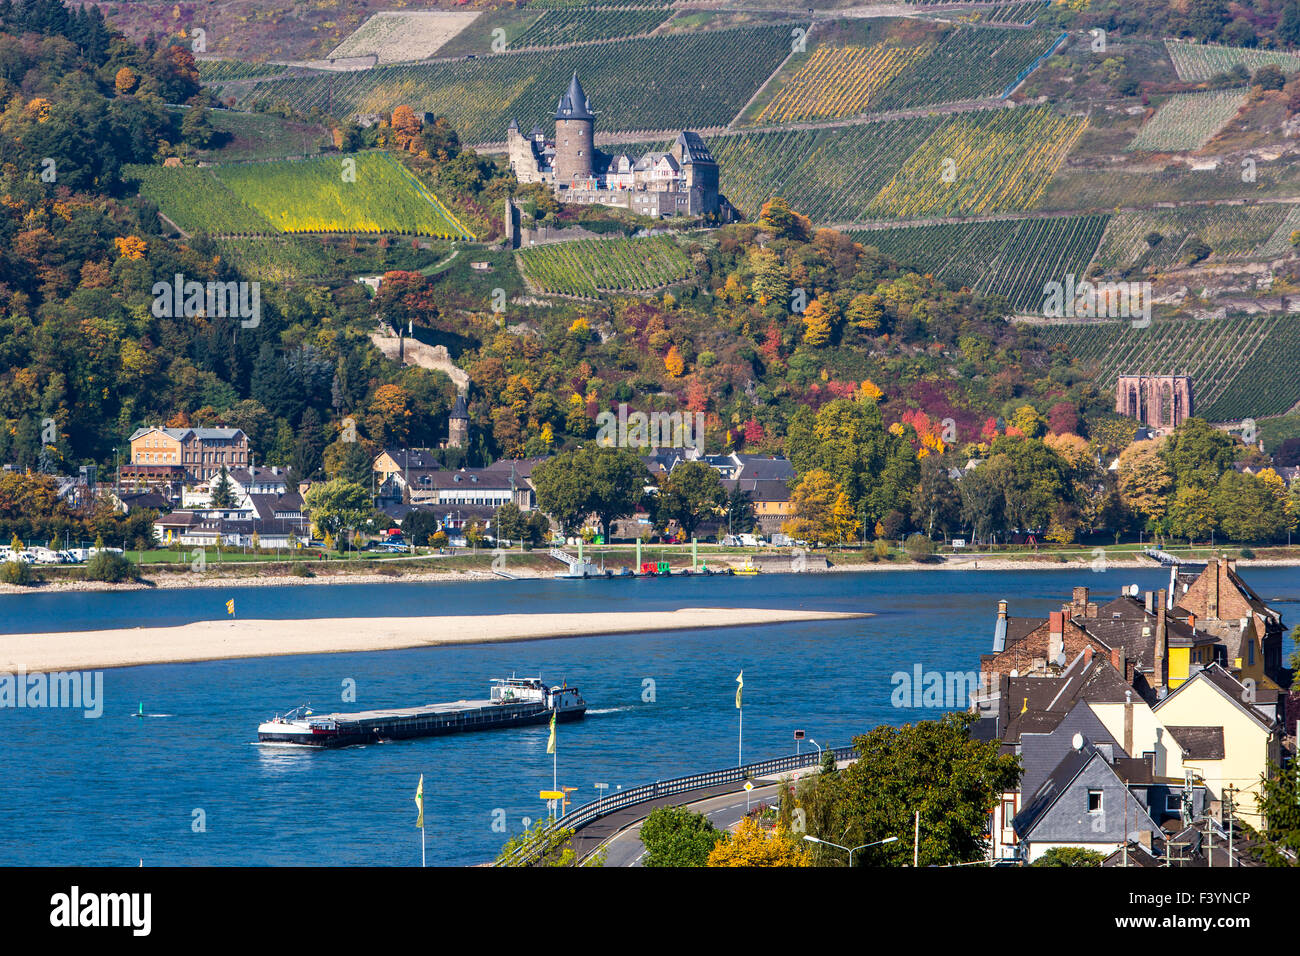 Bacharach ein kleines Weindorf in den Rhein Valley Gebiet, historische Altstadt, altes Schloss und Stadt Wand in th inmitten von Weinbergen Stockfoto